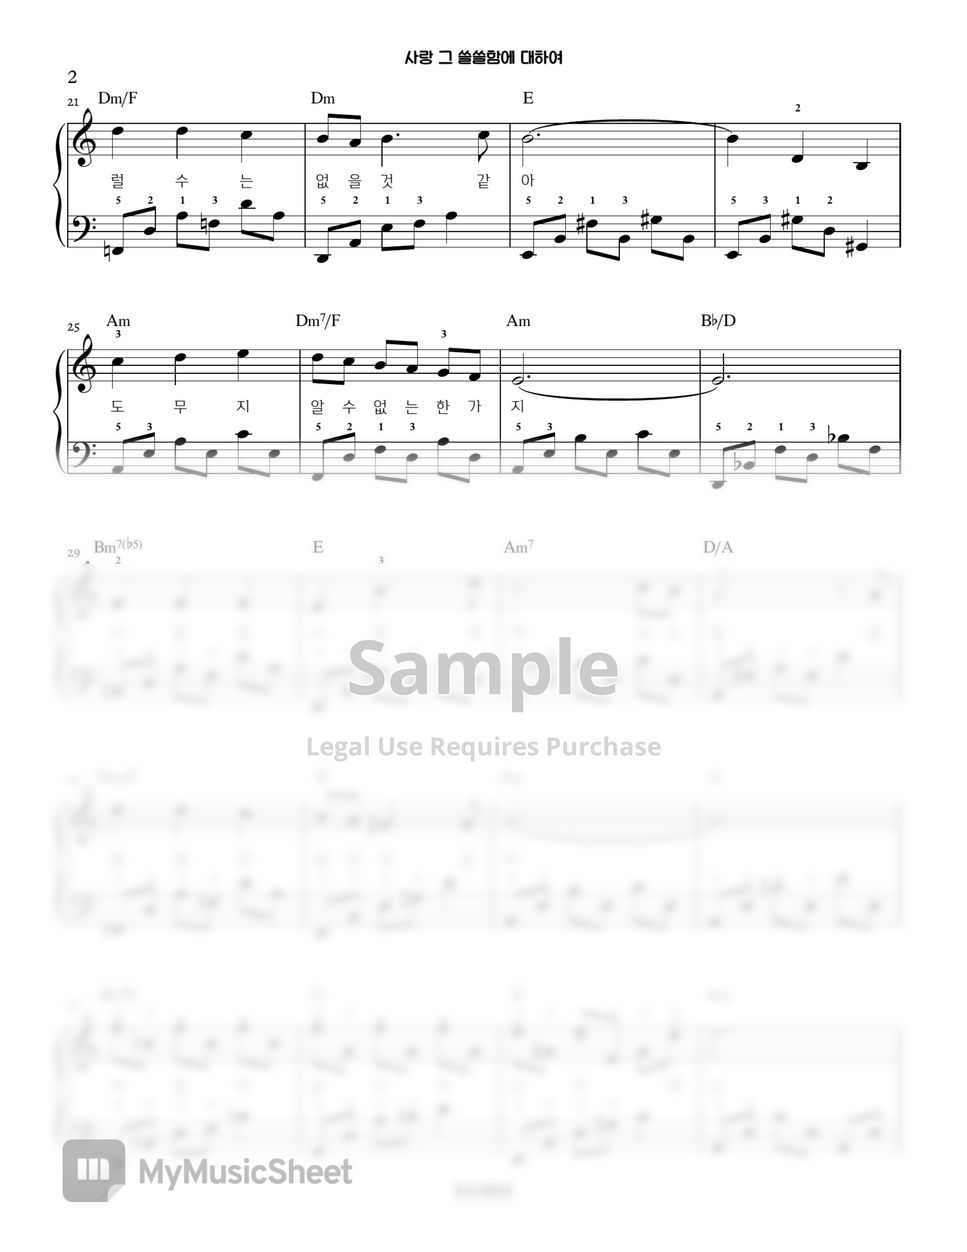 양희은 - 사랑 그 쓸쓸함에 대하여 | Piano Arrangement (K-Pop) by PianoSSam